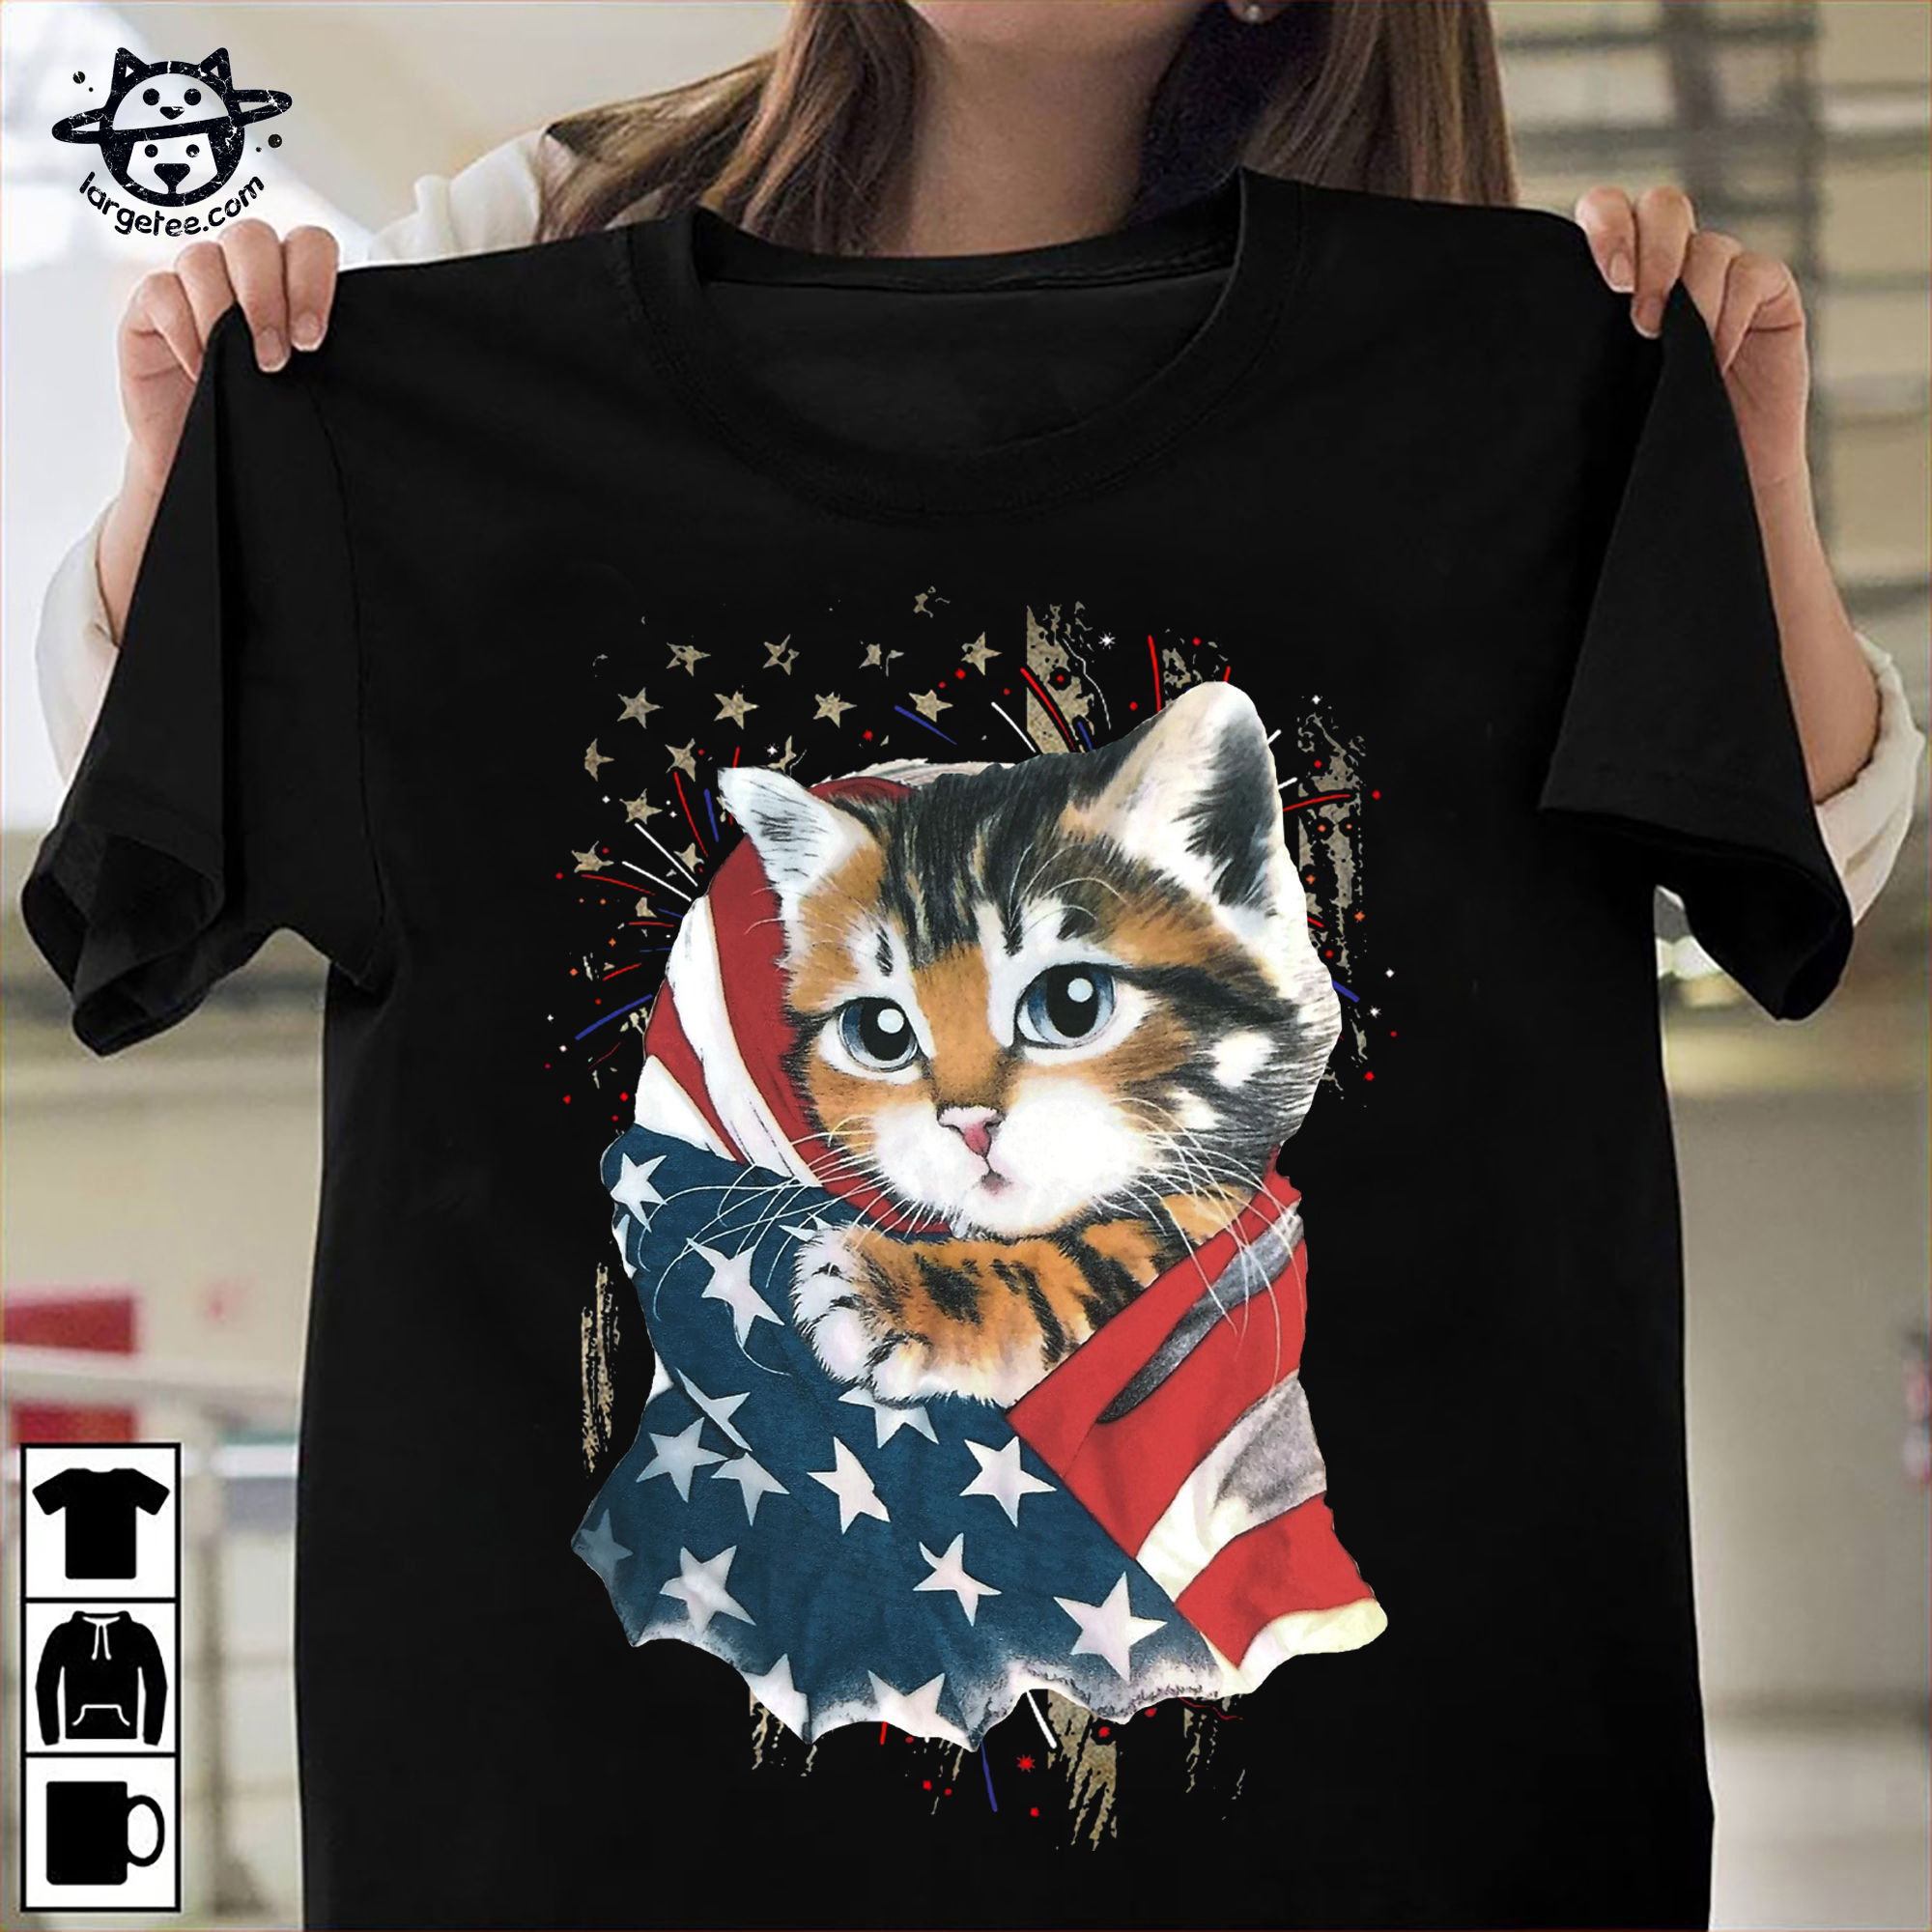 Kitty cat and America flag - Cat lover Shirt, Hoodie, Sweatshirt ...